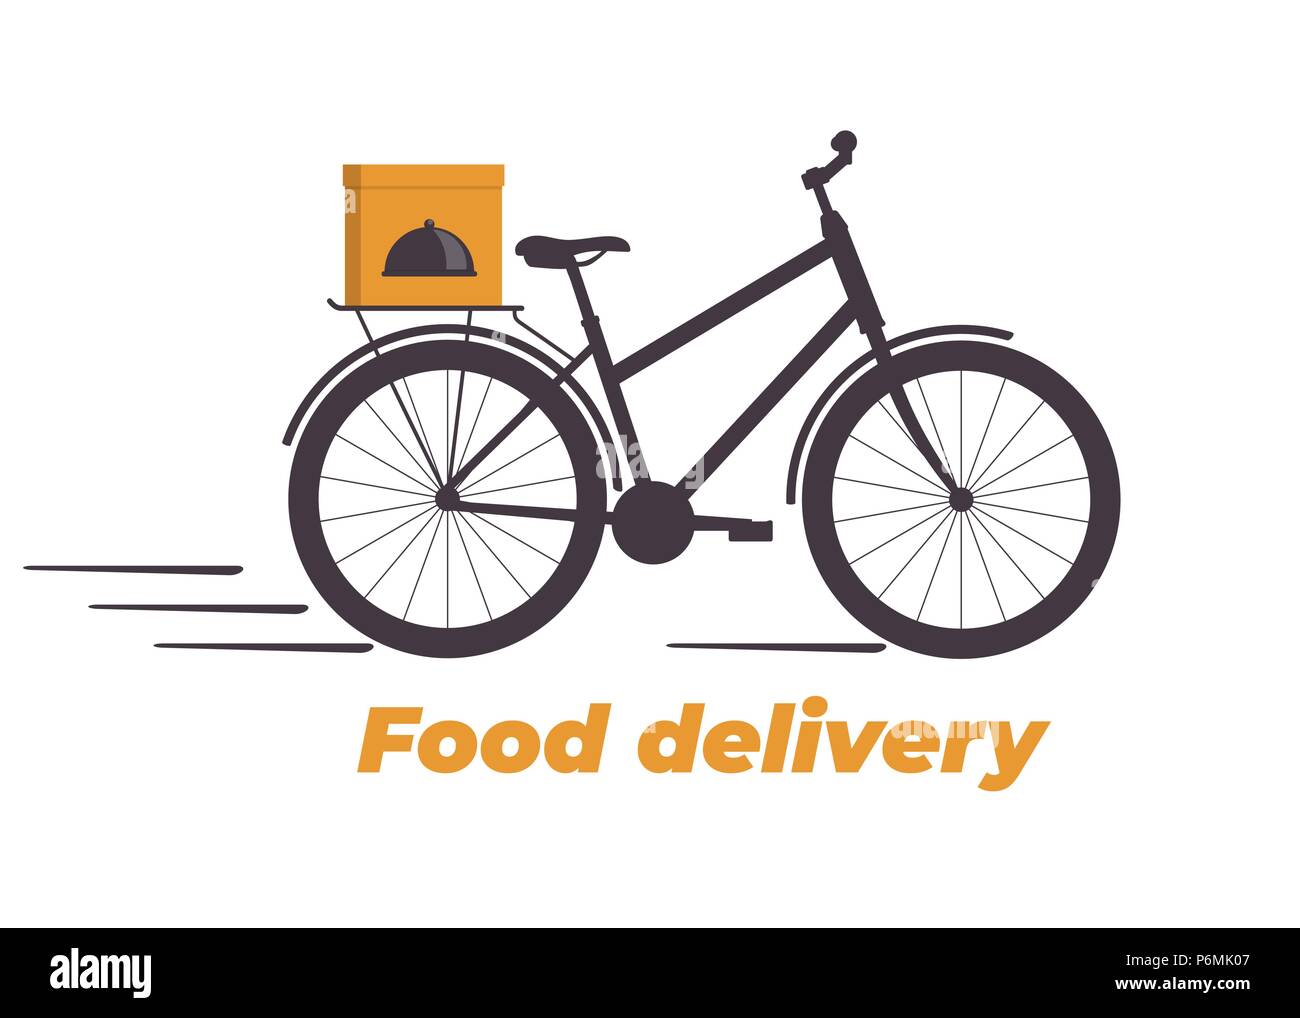 Essen Lieferung Design. Fahrrad mit Box am Stamm. Food Delivery Service Logo. Schnelle Lieferung. Flache Vector Illustration Stock Vektor